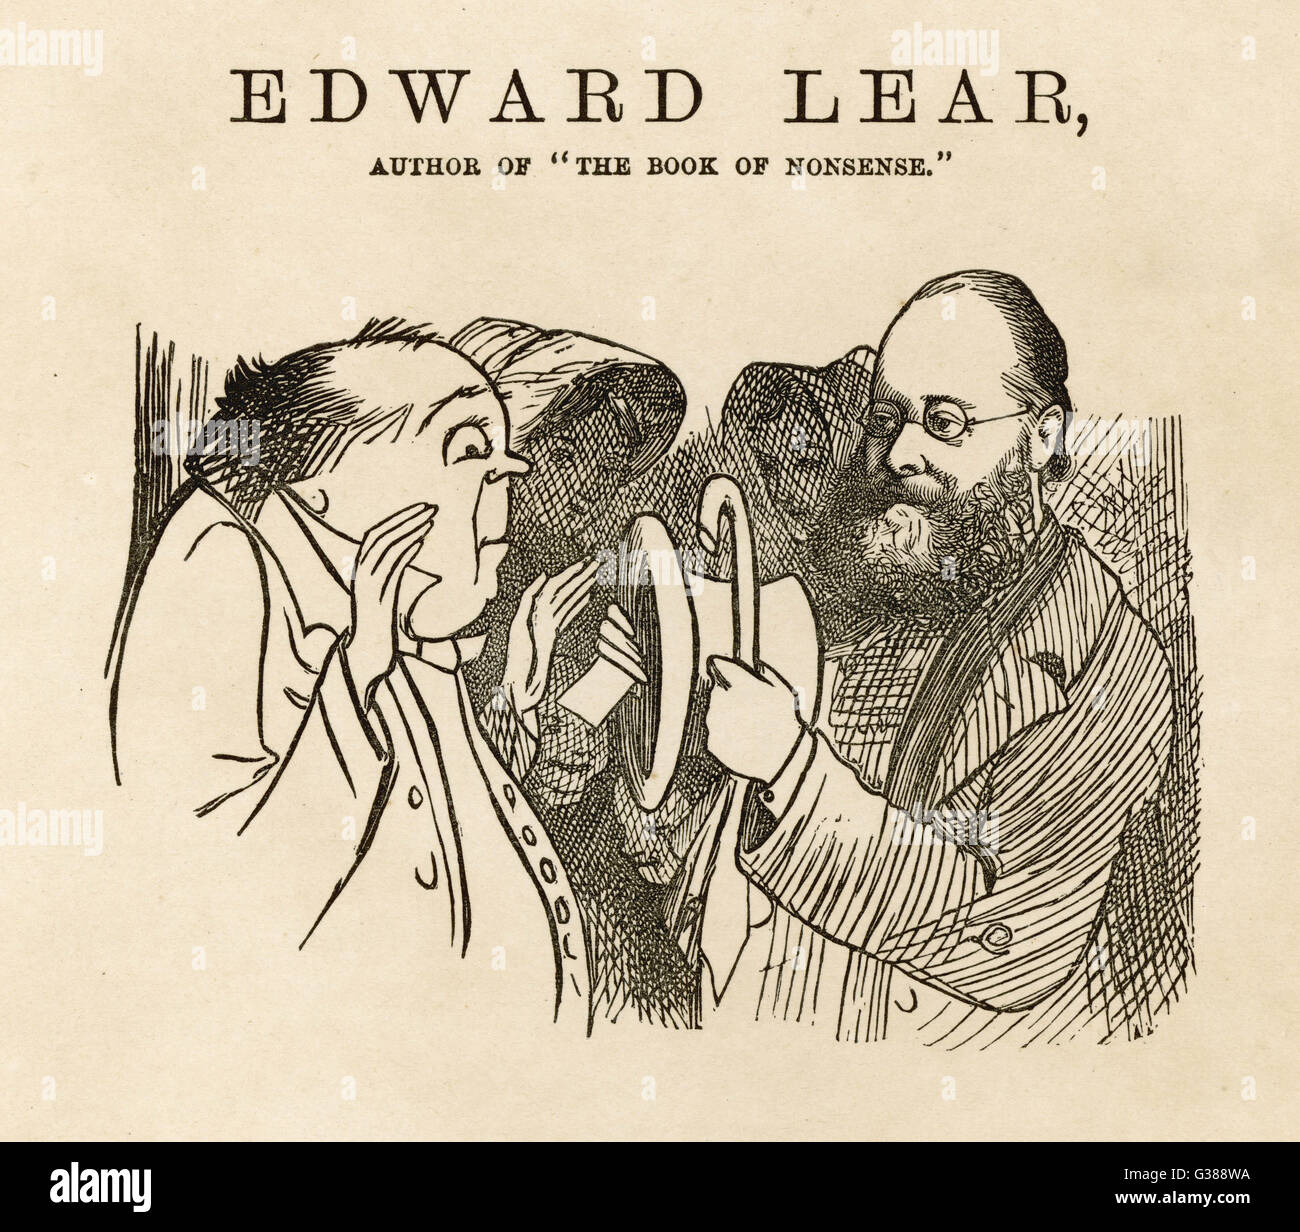 EDWARD LEAR artista e poeta sciocchezze, mostrando un estraneo che ha pensato che Edward Lear è stata semplicemente uno pseudonimo, all'interno del suo cappello con il suo nome nel rivestimento. Data: 1812 - 1888 Foto Stock